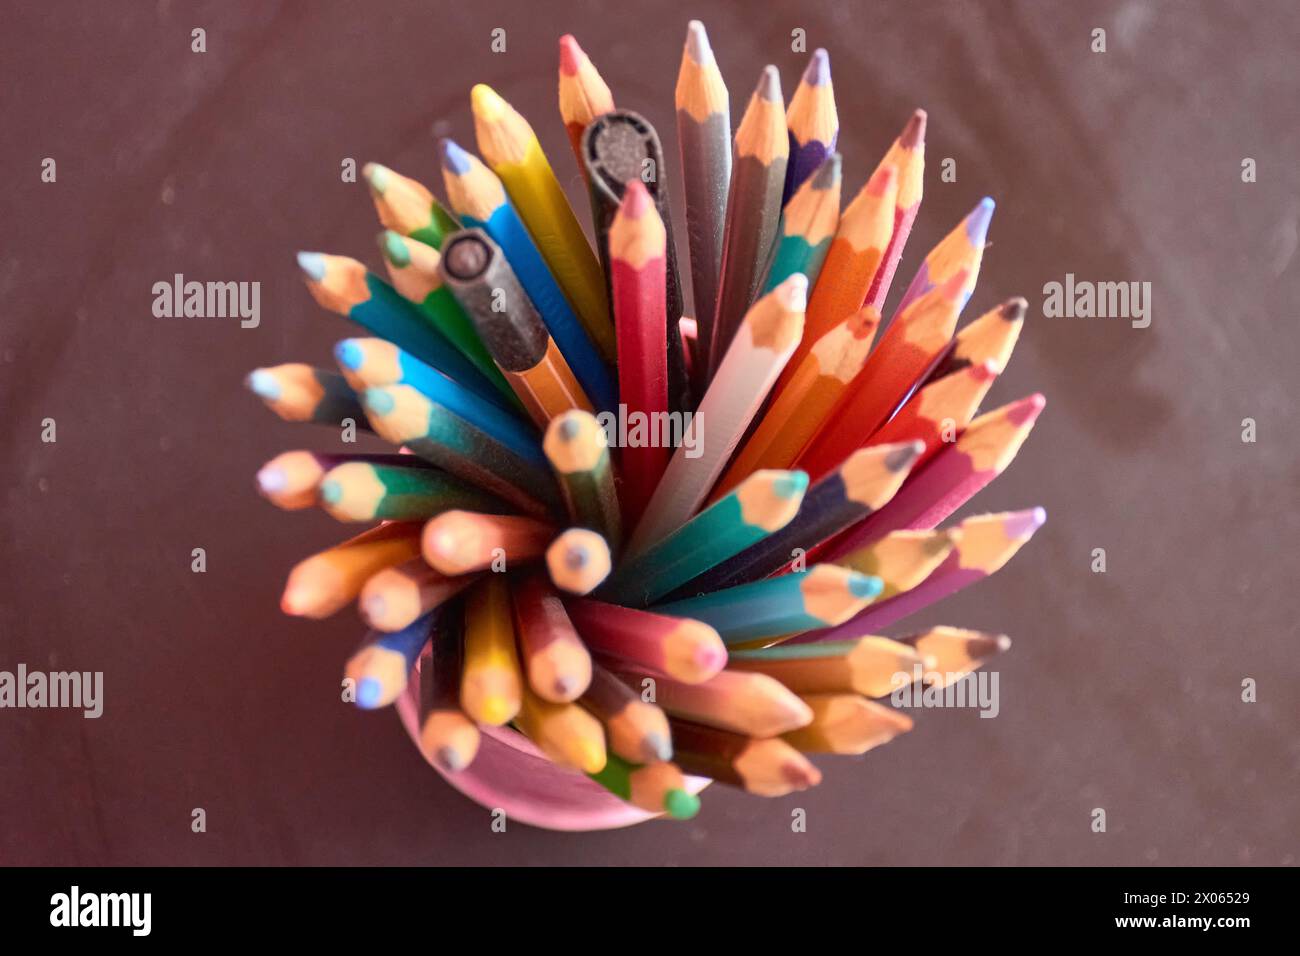 Bleistift, Farbe und Schreibwaren mit Draufsicht, Schule oder Kunst bieten Zoom für Bildungs- und kreative Zwecke. Schreibwerkzeuge, Kreativitätsmodelle und Stockfoto